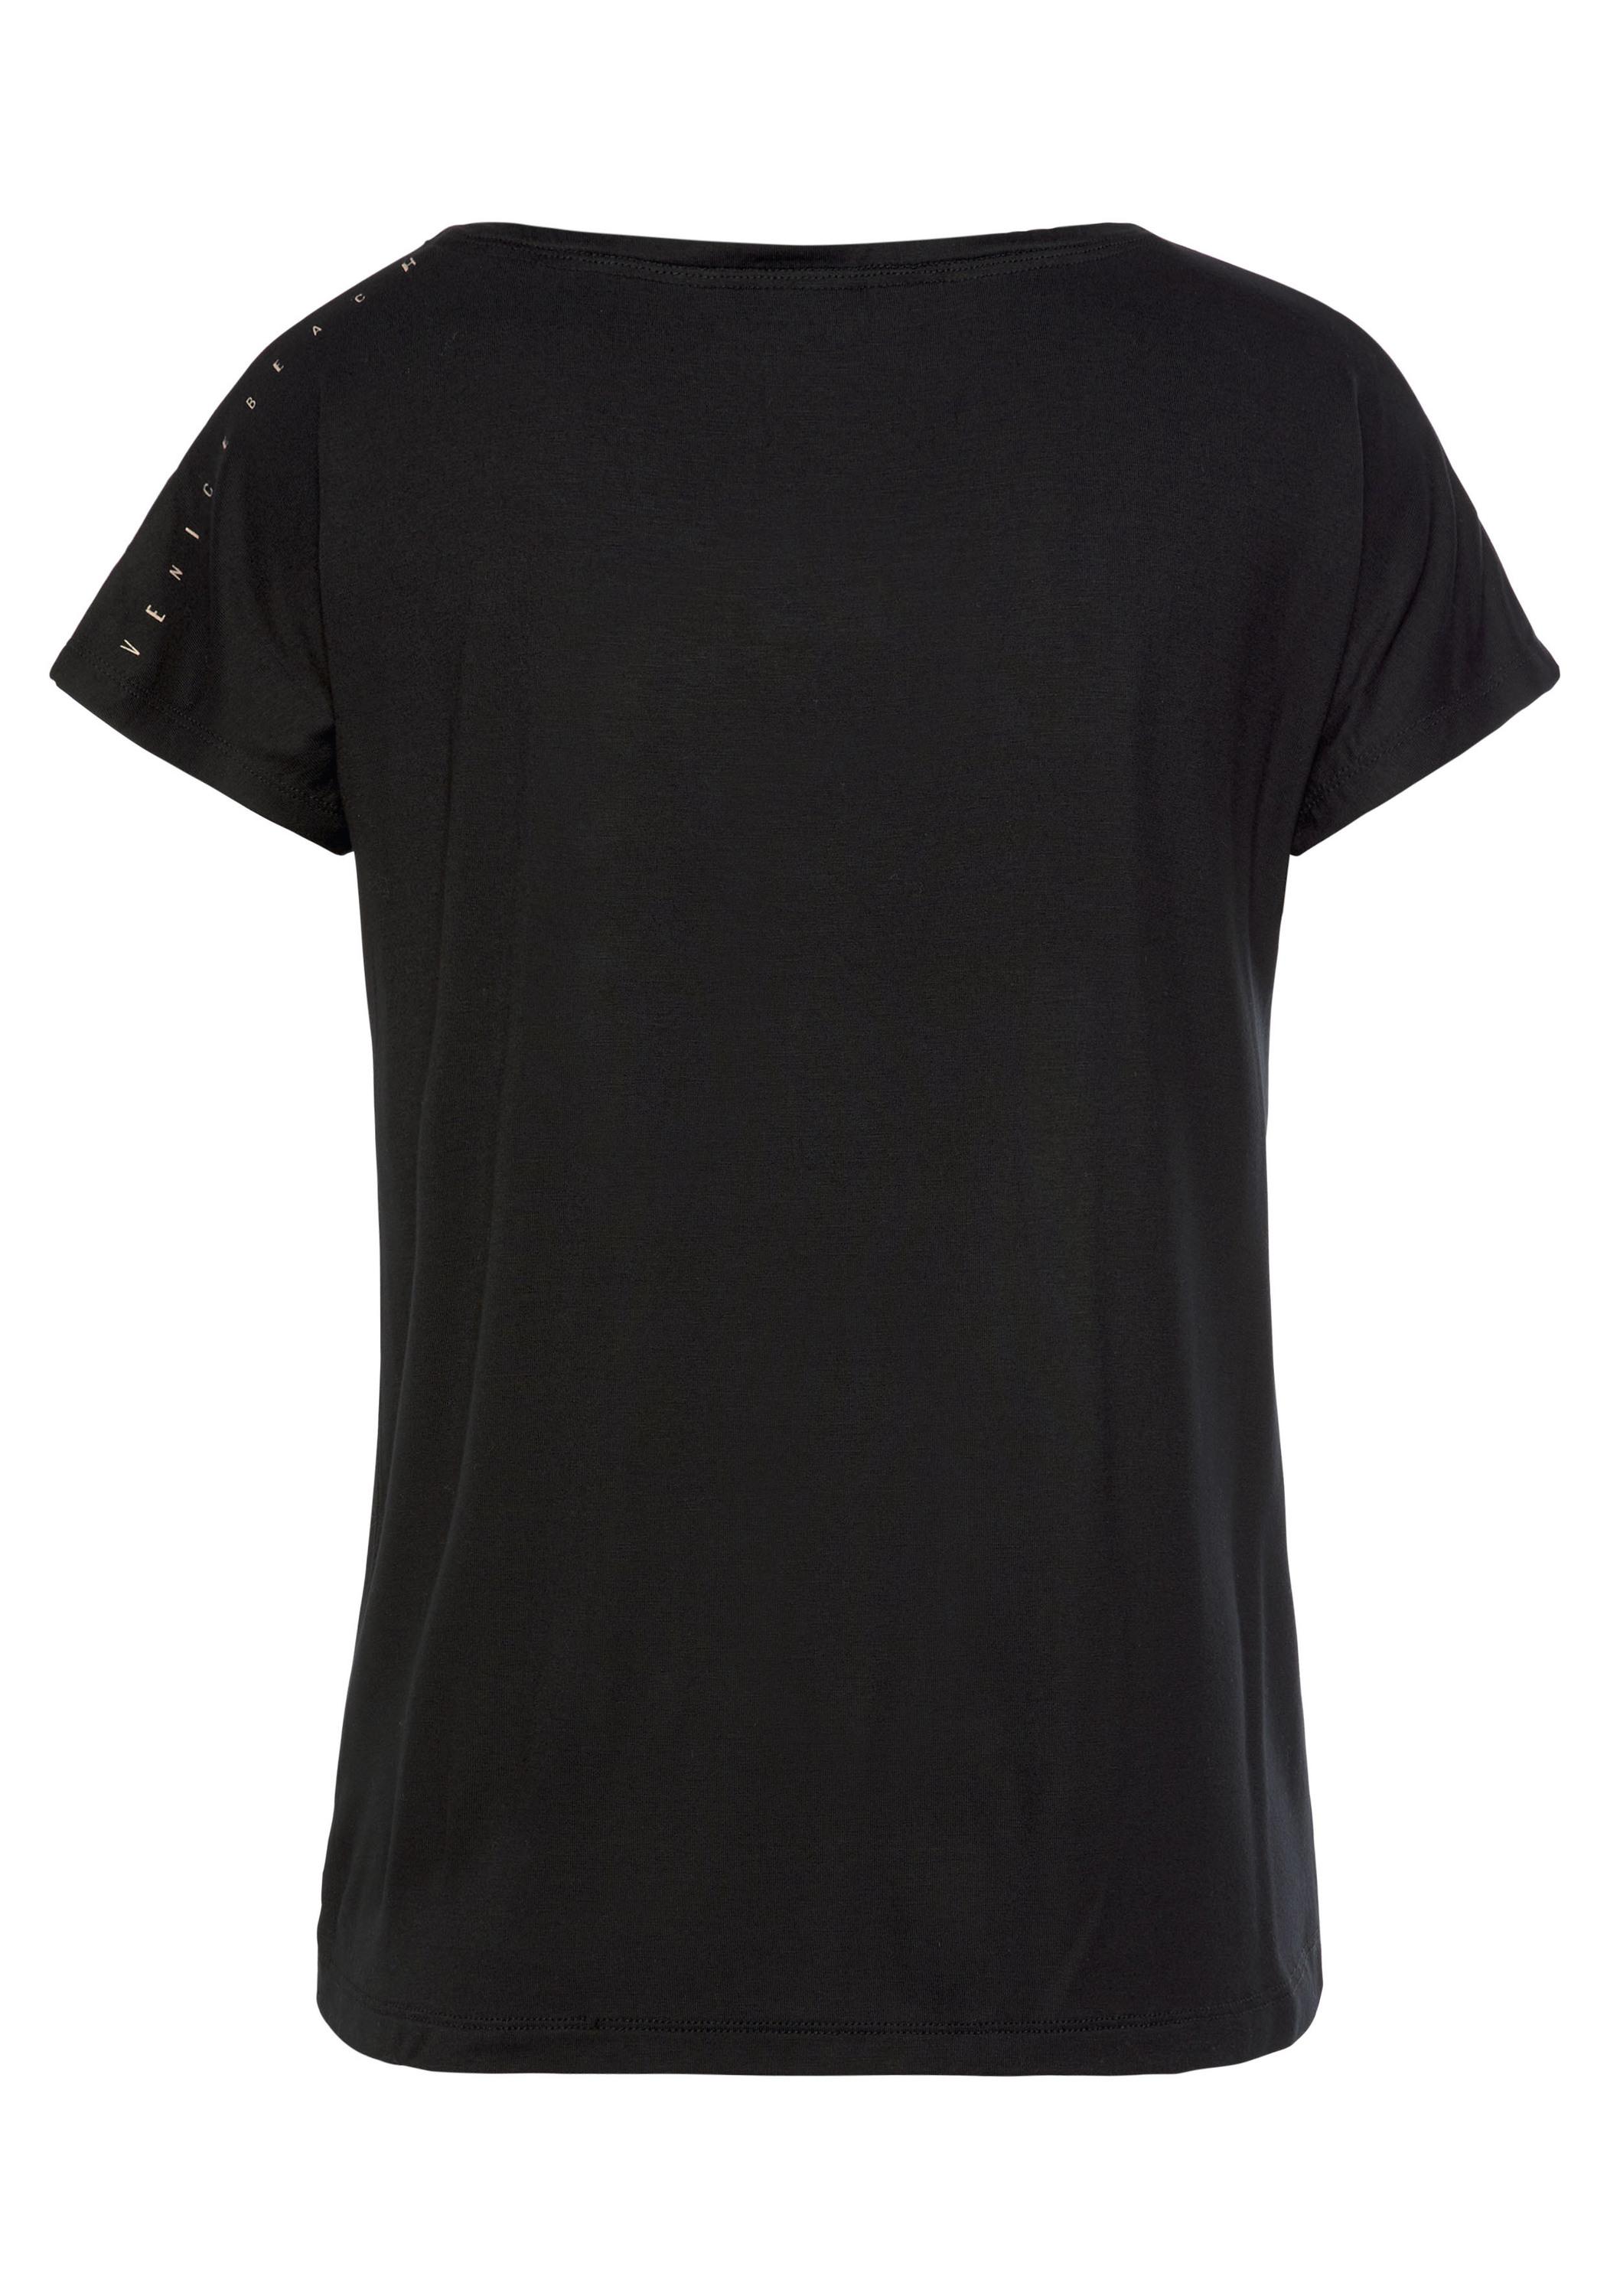 VENICE BEACH schwarz von Damen kaufen Online T-Shirt SportScheck Shop im